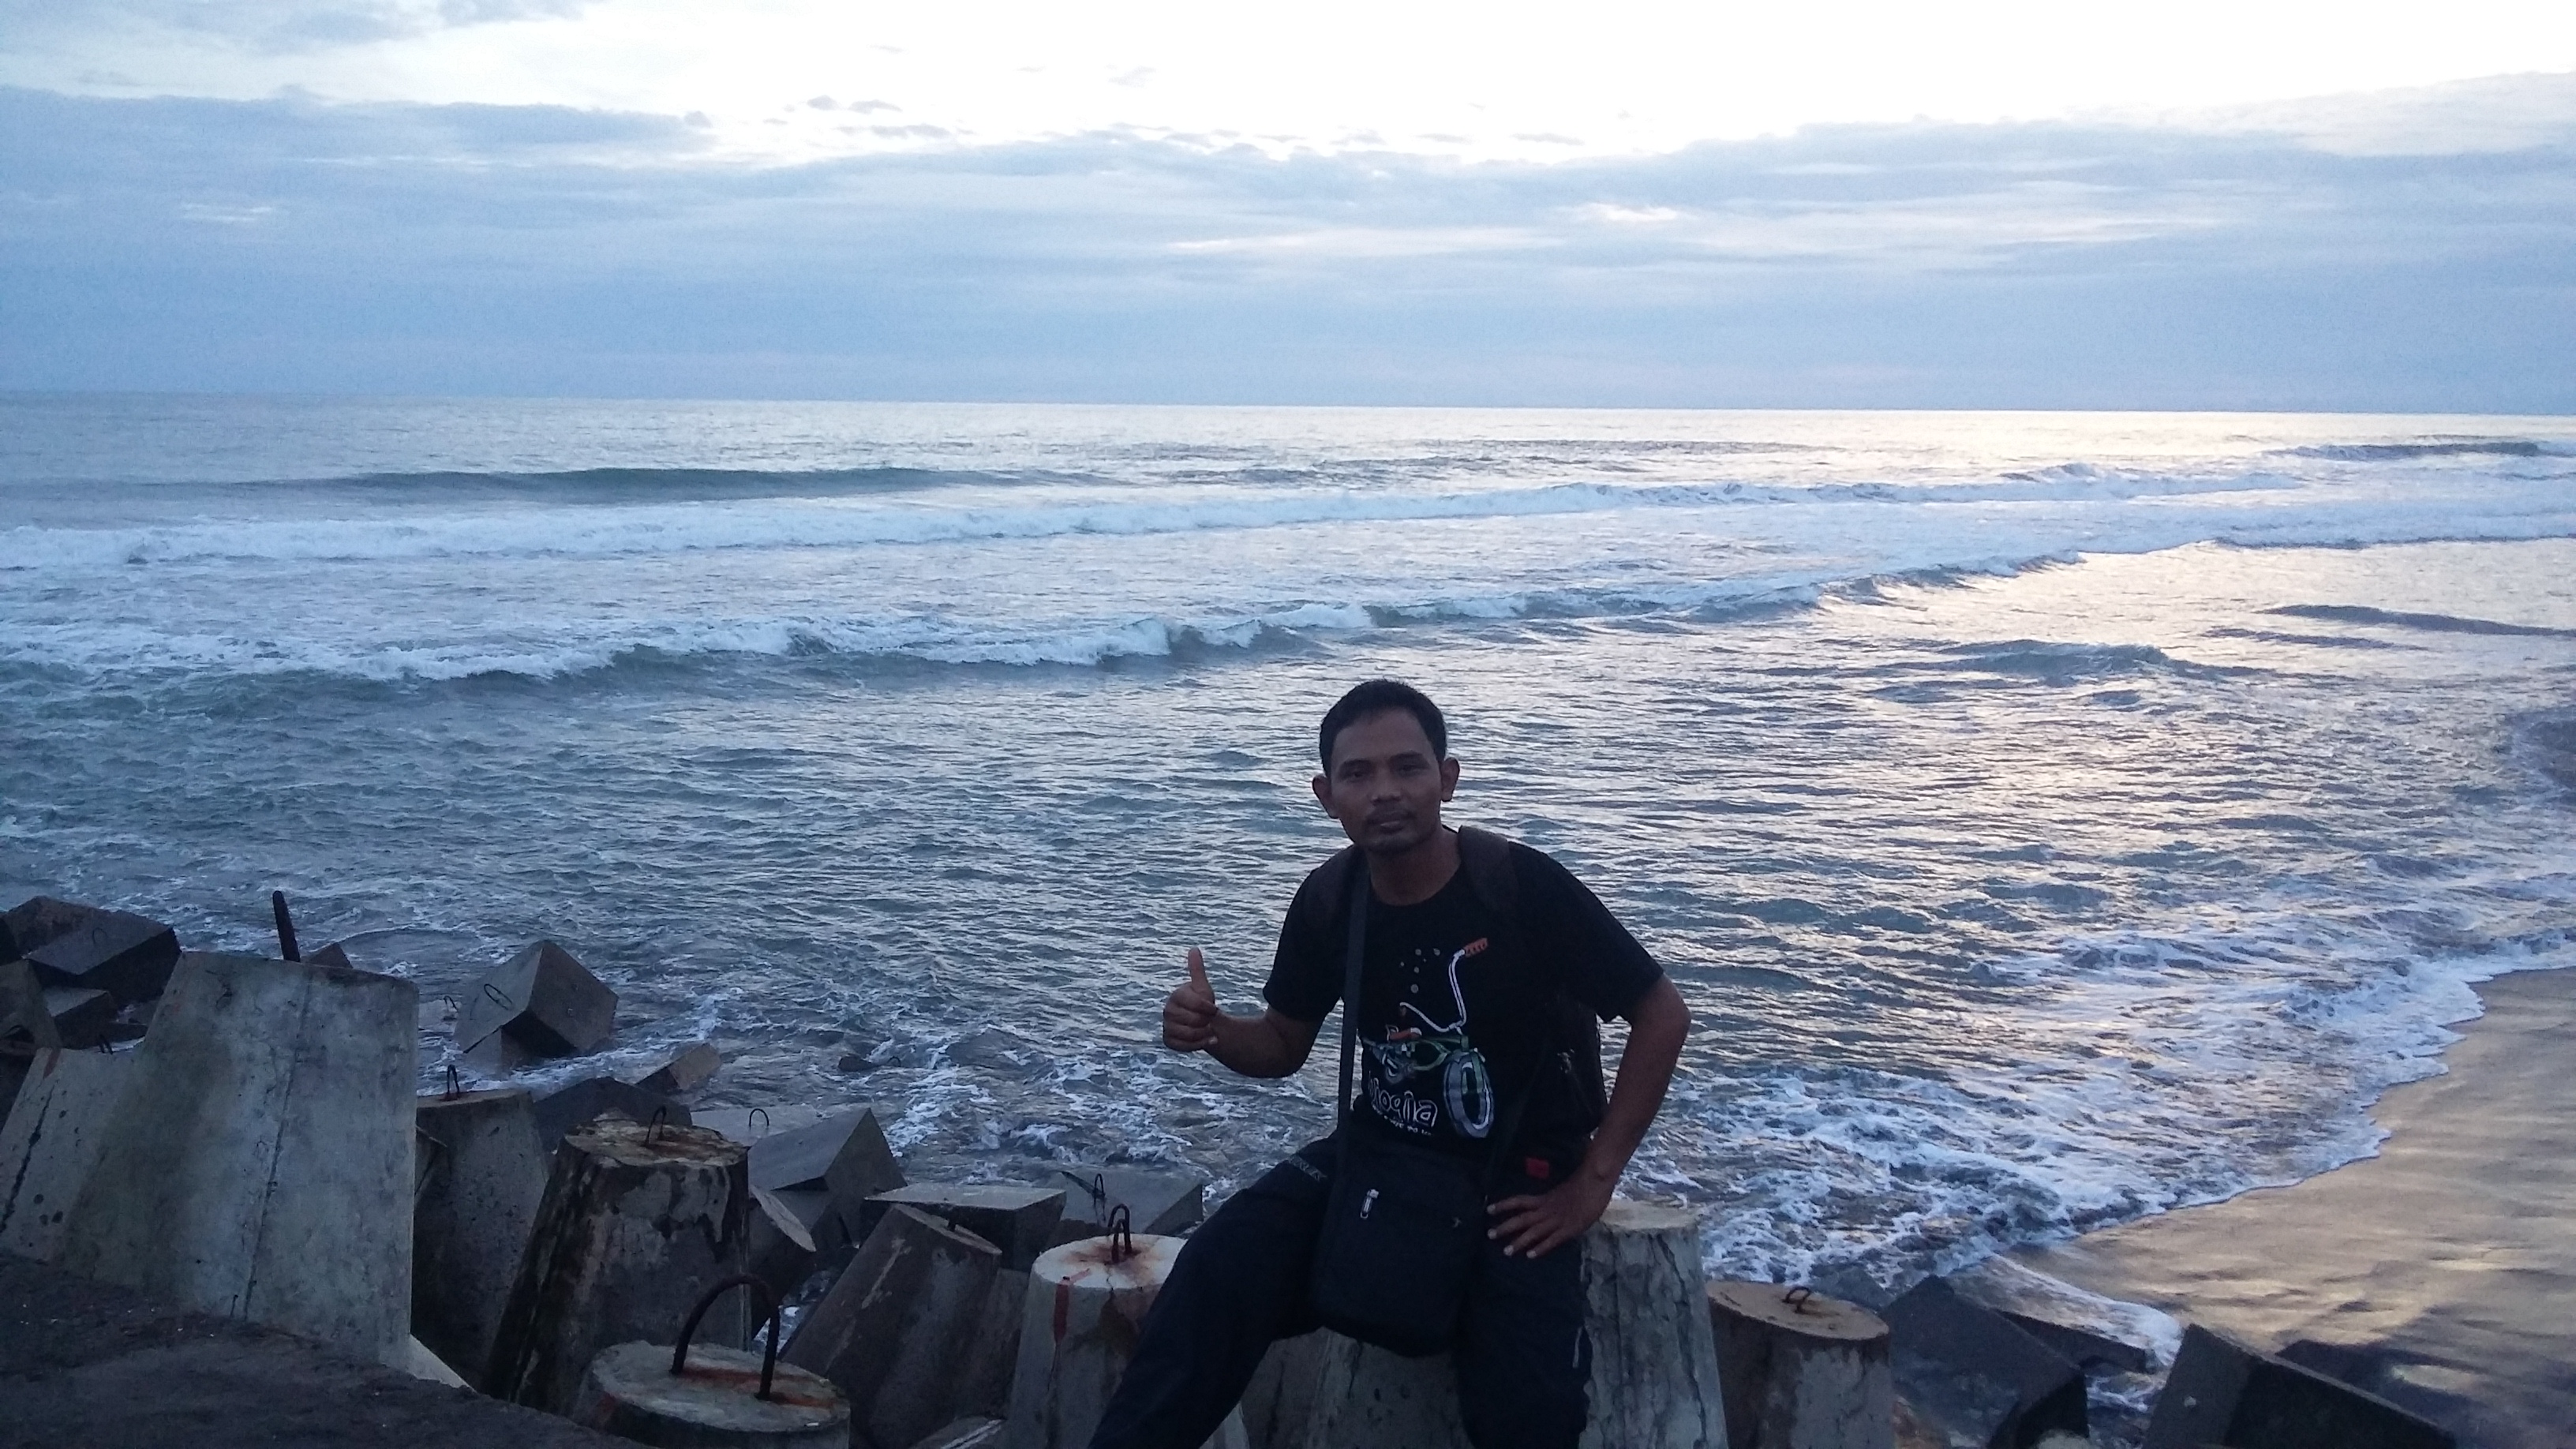 Pantai Glagah Yogyakarta